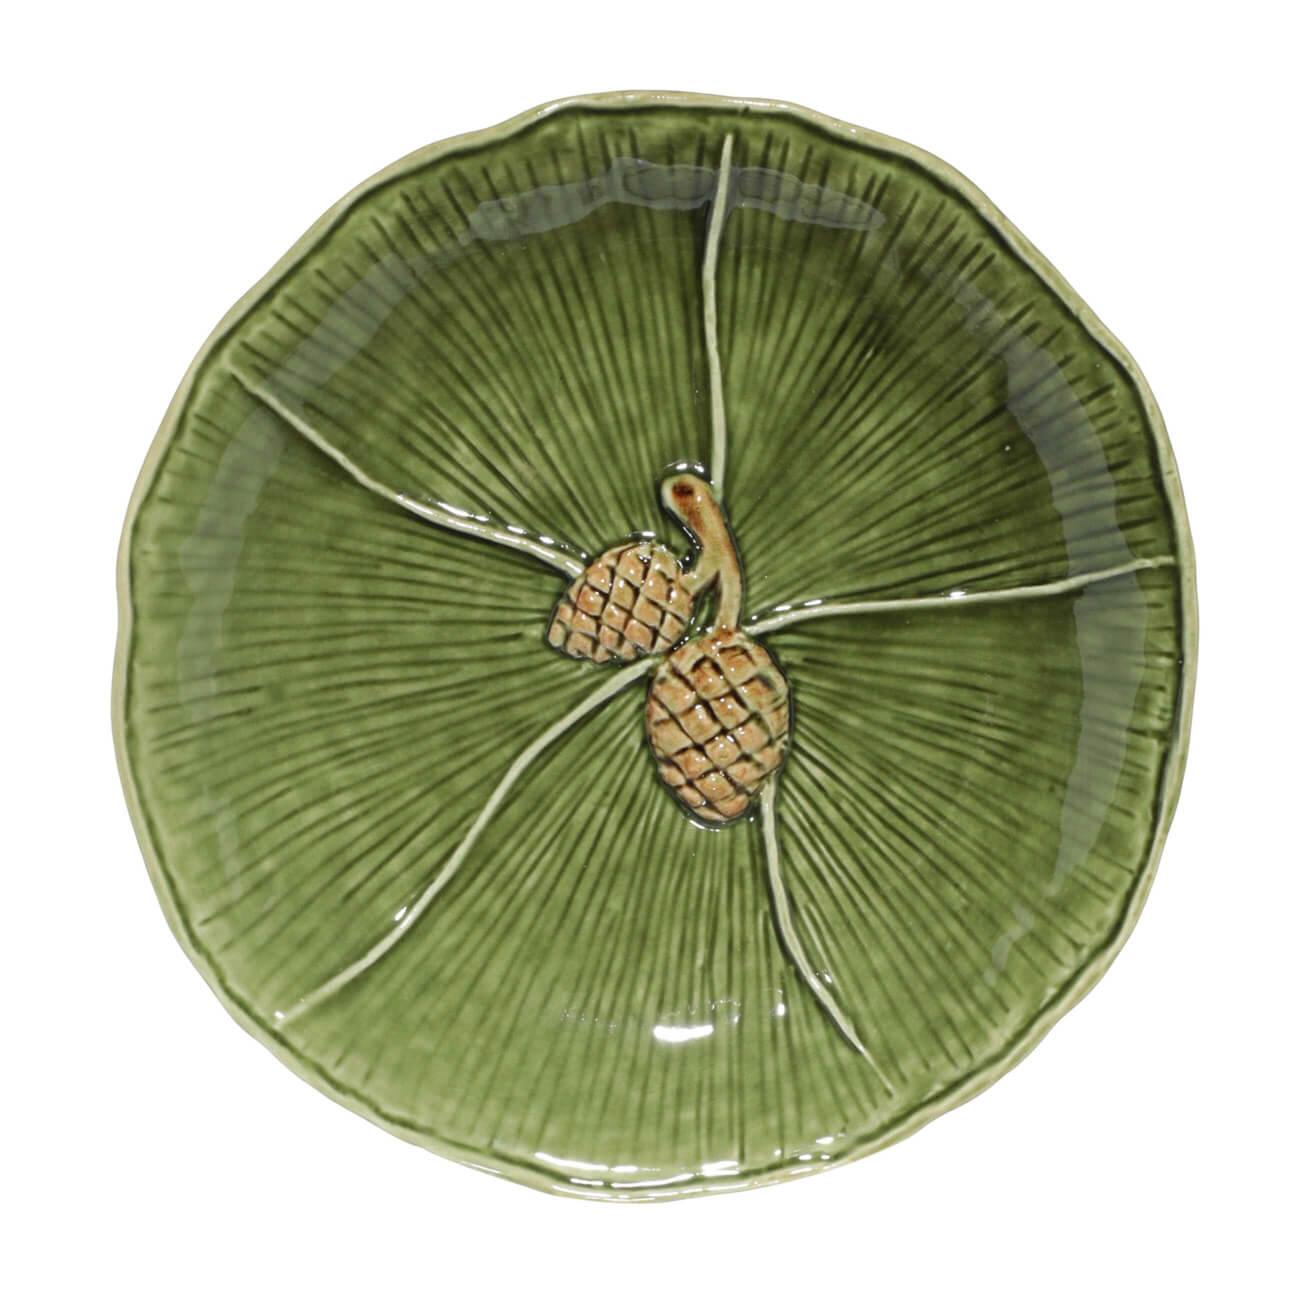 Блюдо, 19 см, керамика, зеленое, Шишки на листе, Fir cone изображение № 1